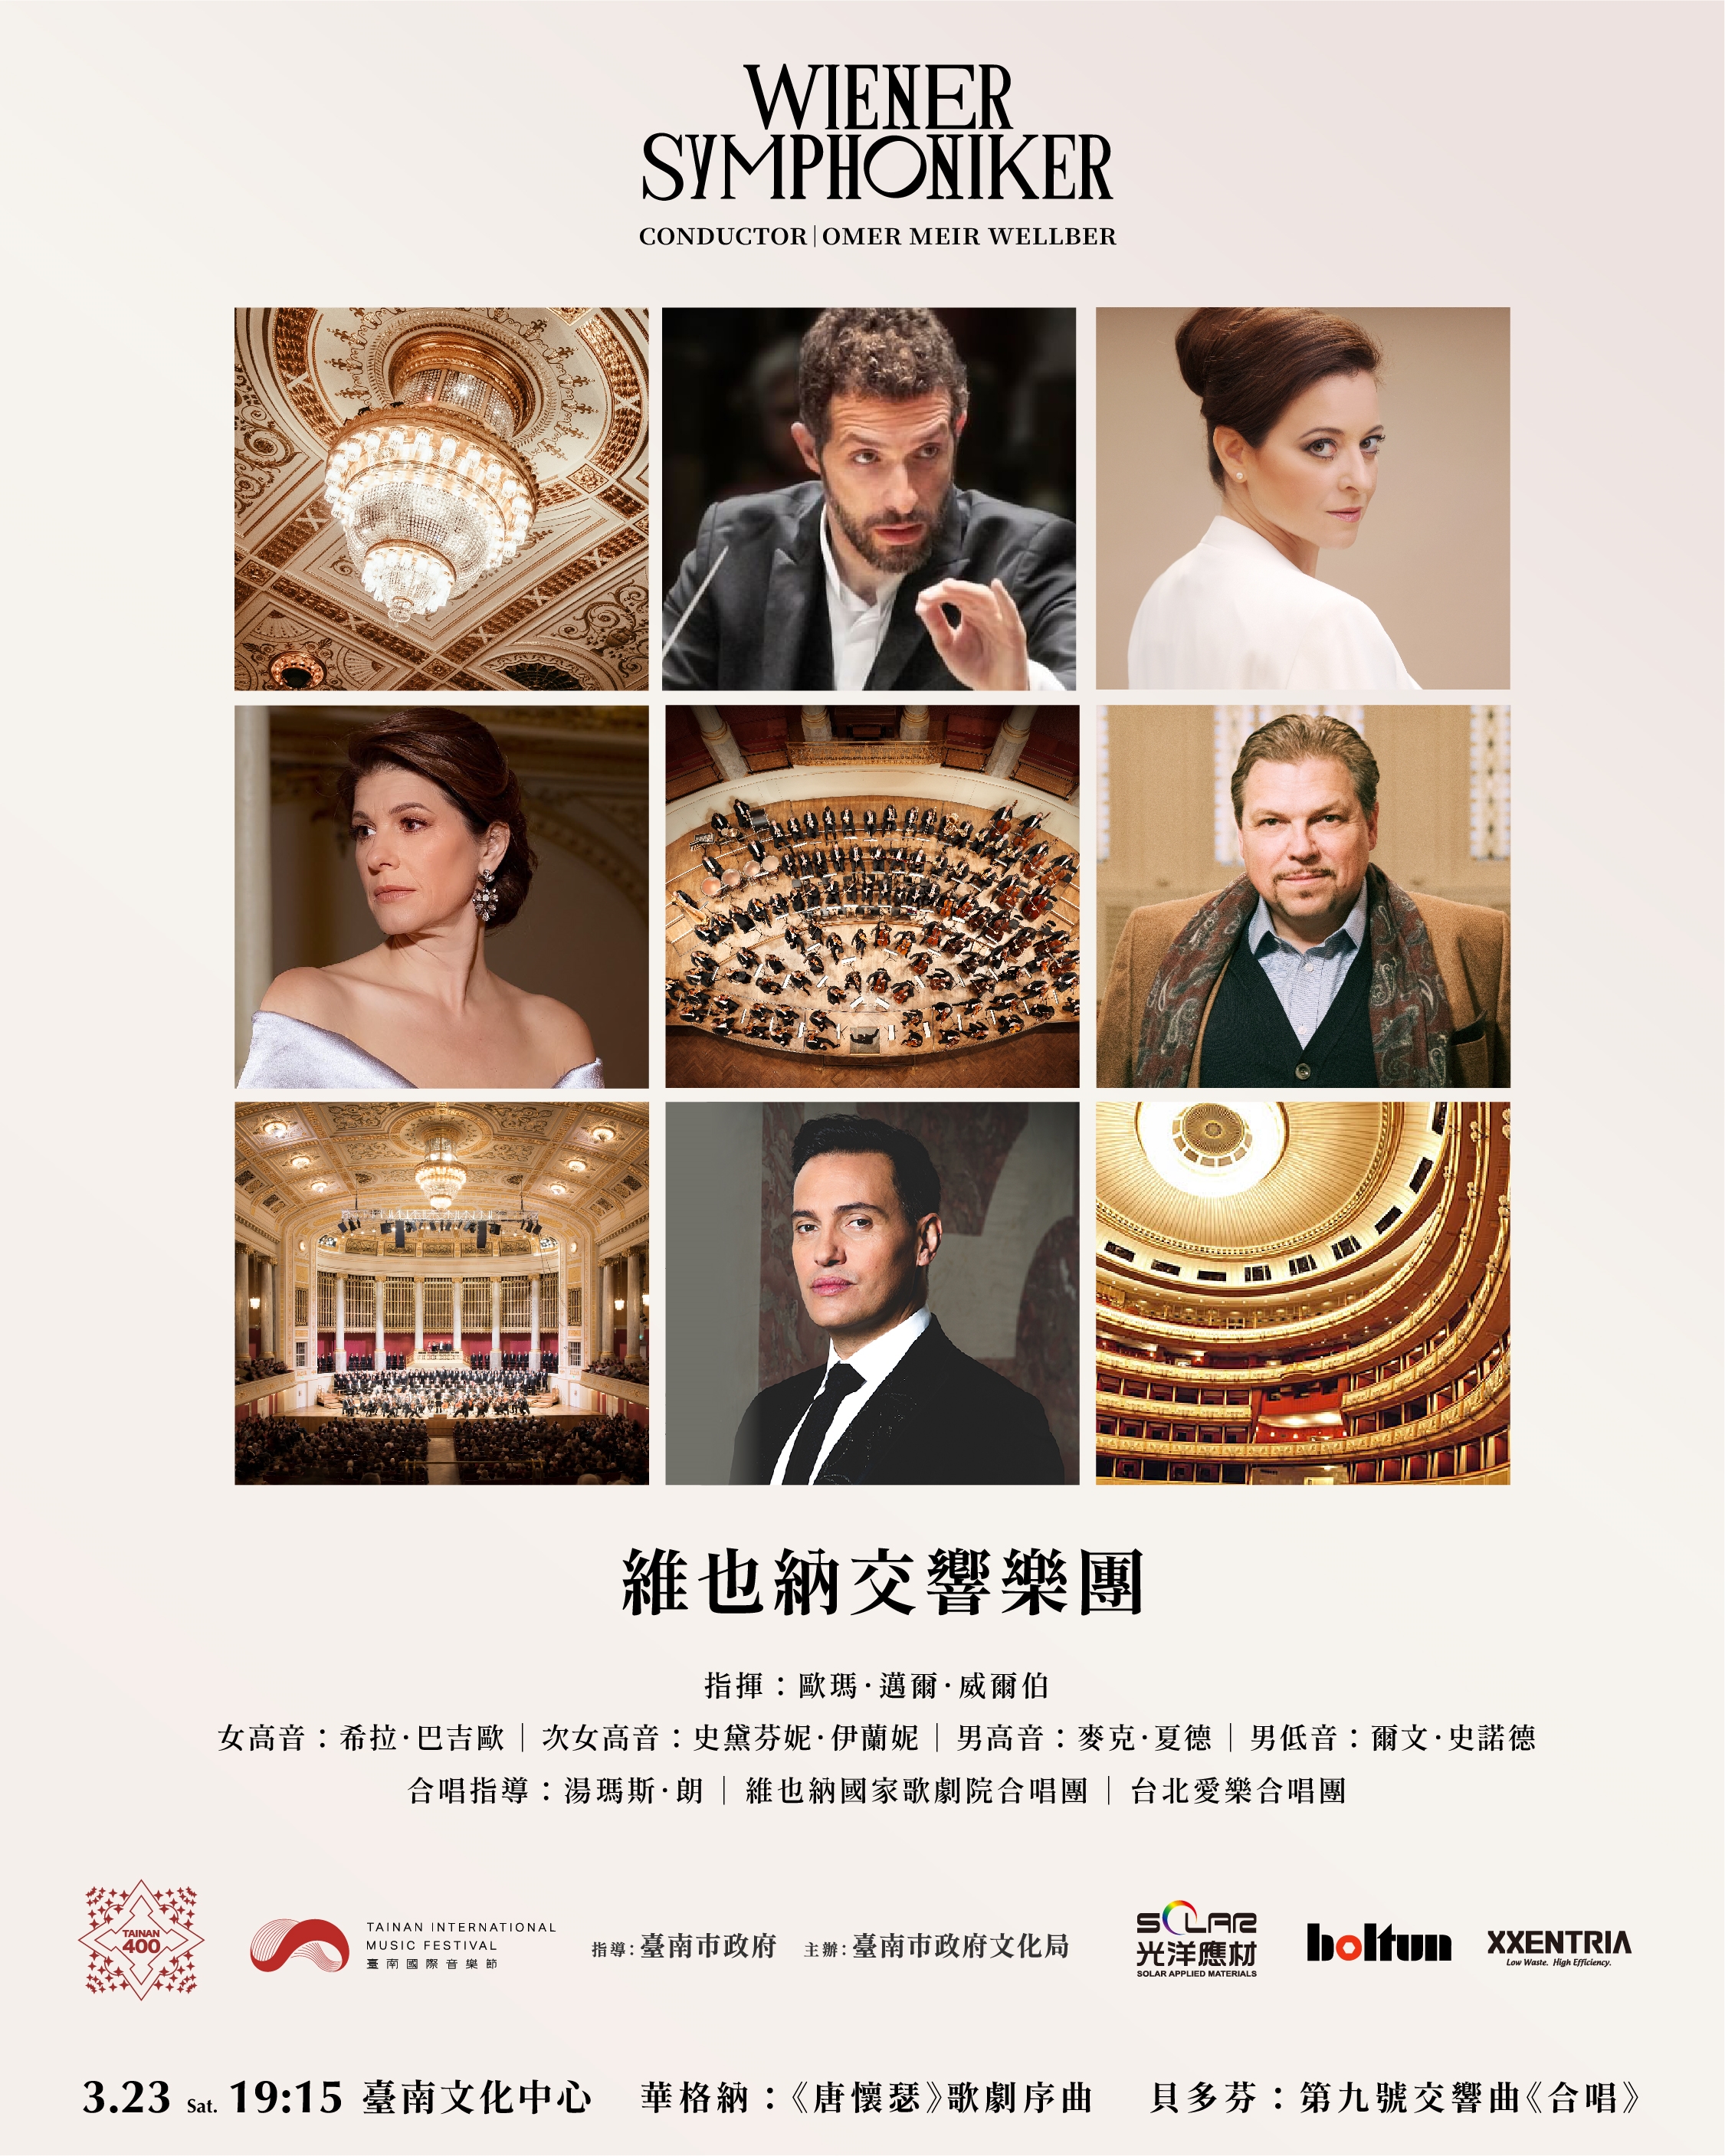 臺南國際音樂節特邀維也納交響樂團  百人共同高歌歡樂頌